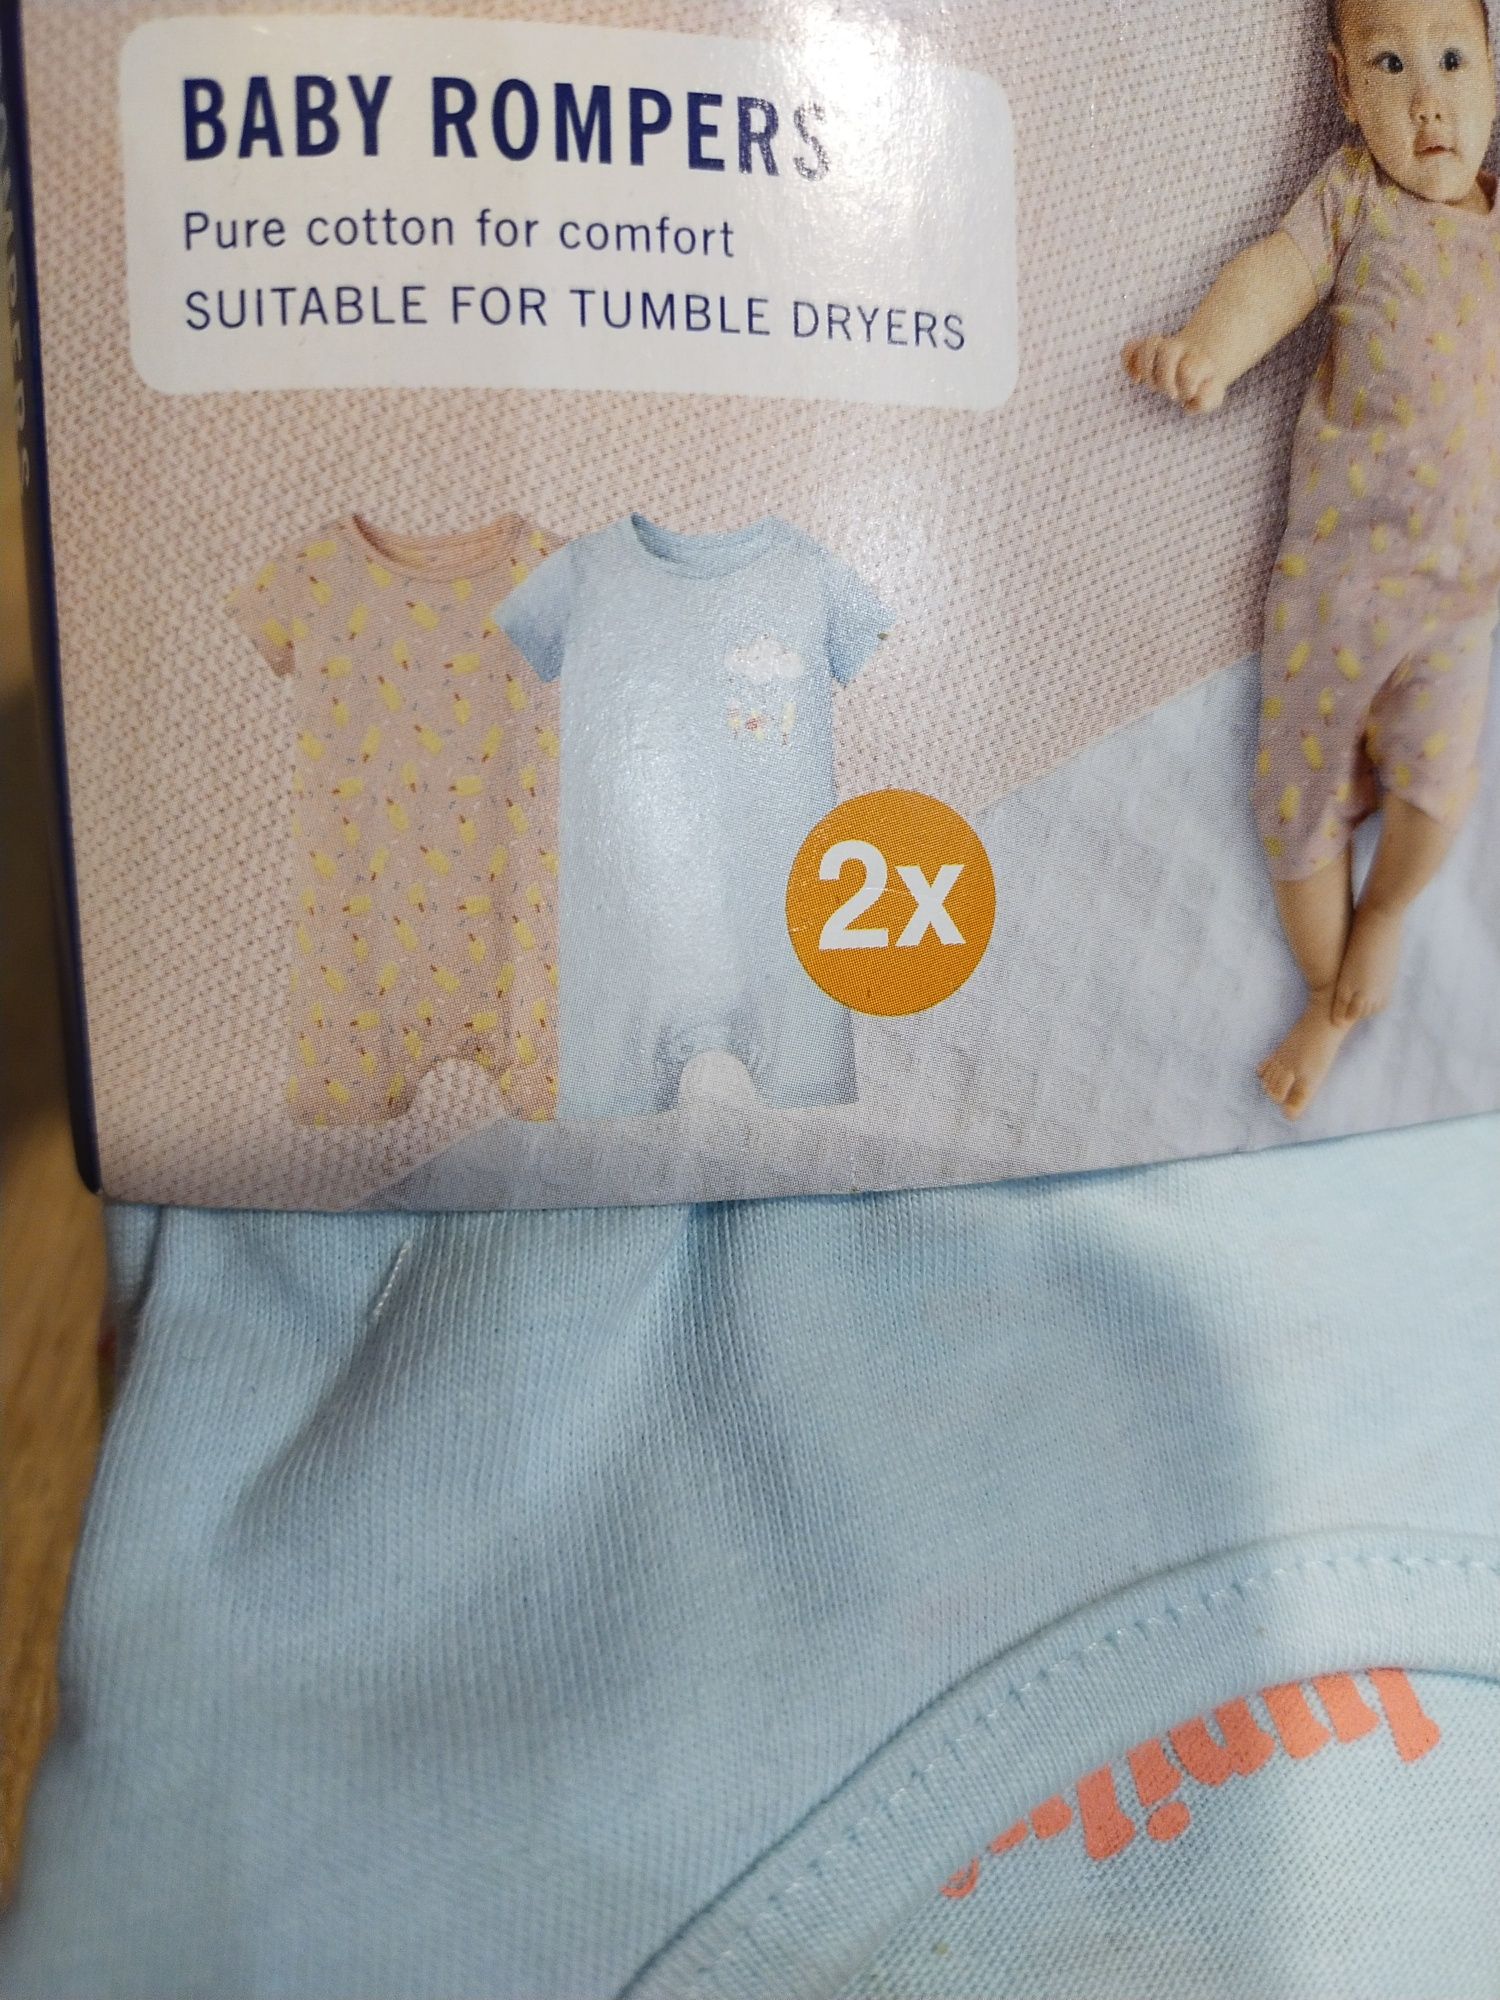 Piżamy dla niemowlaków rampers  r 68 dwupak